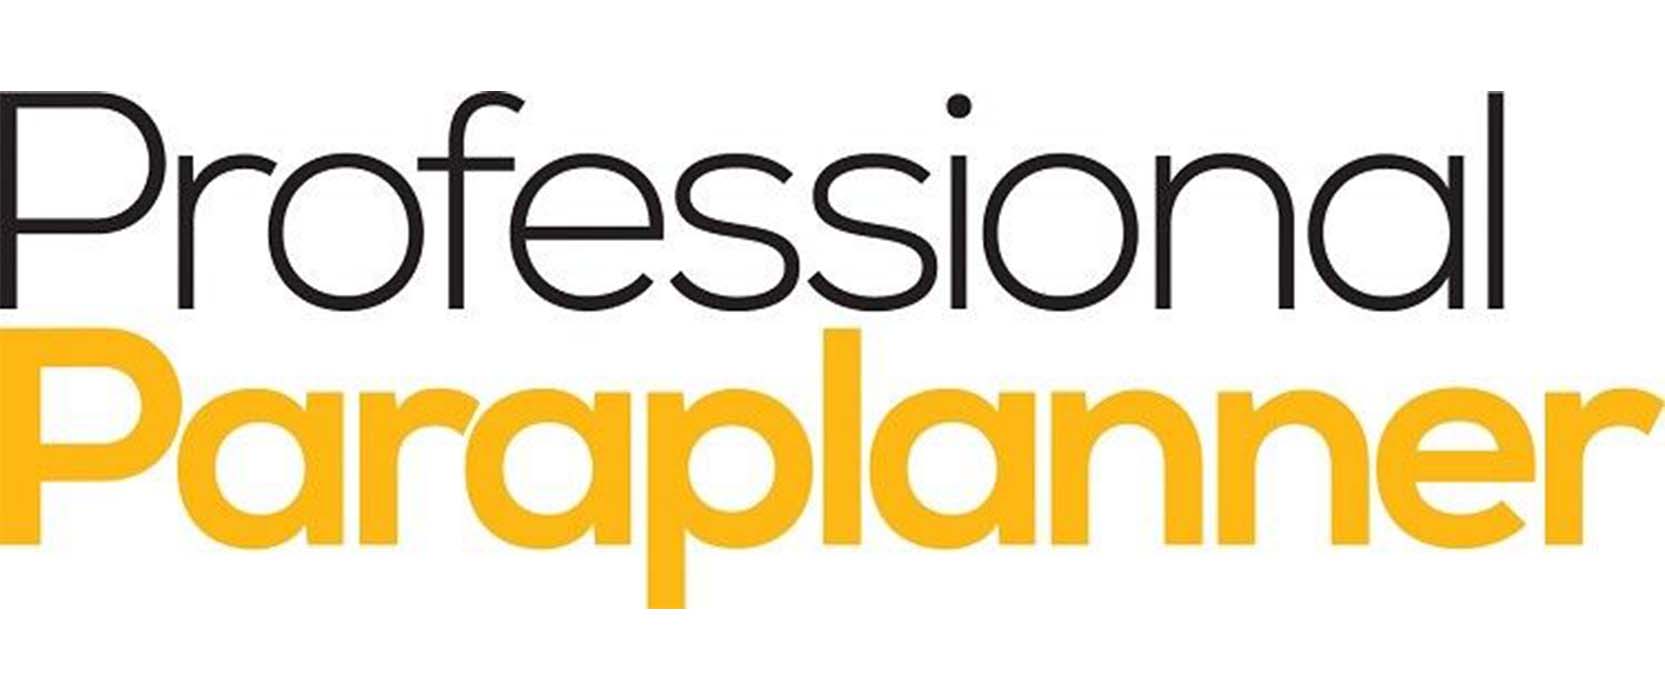 Professional Paraplanner logo